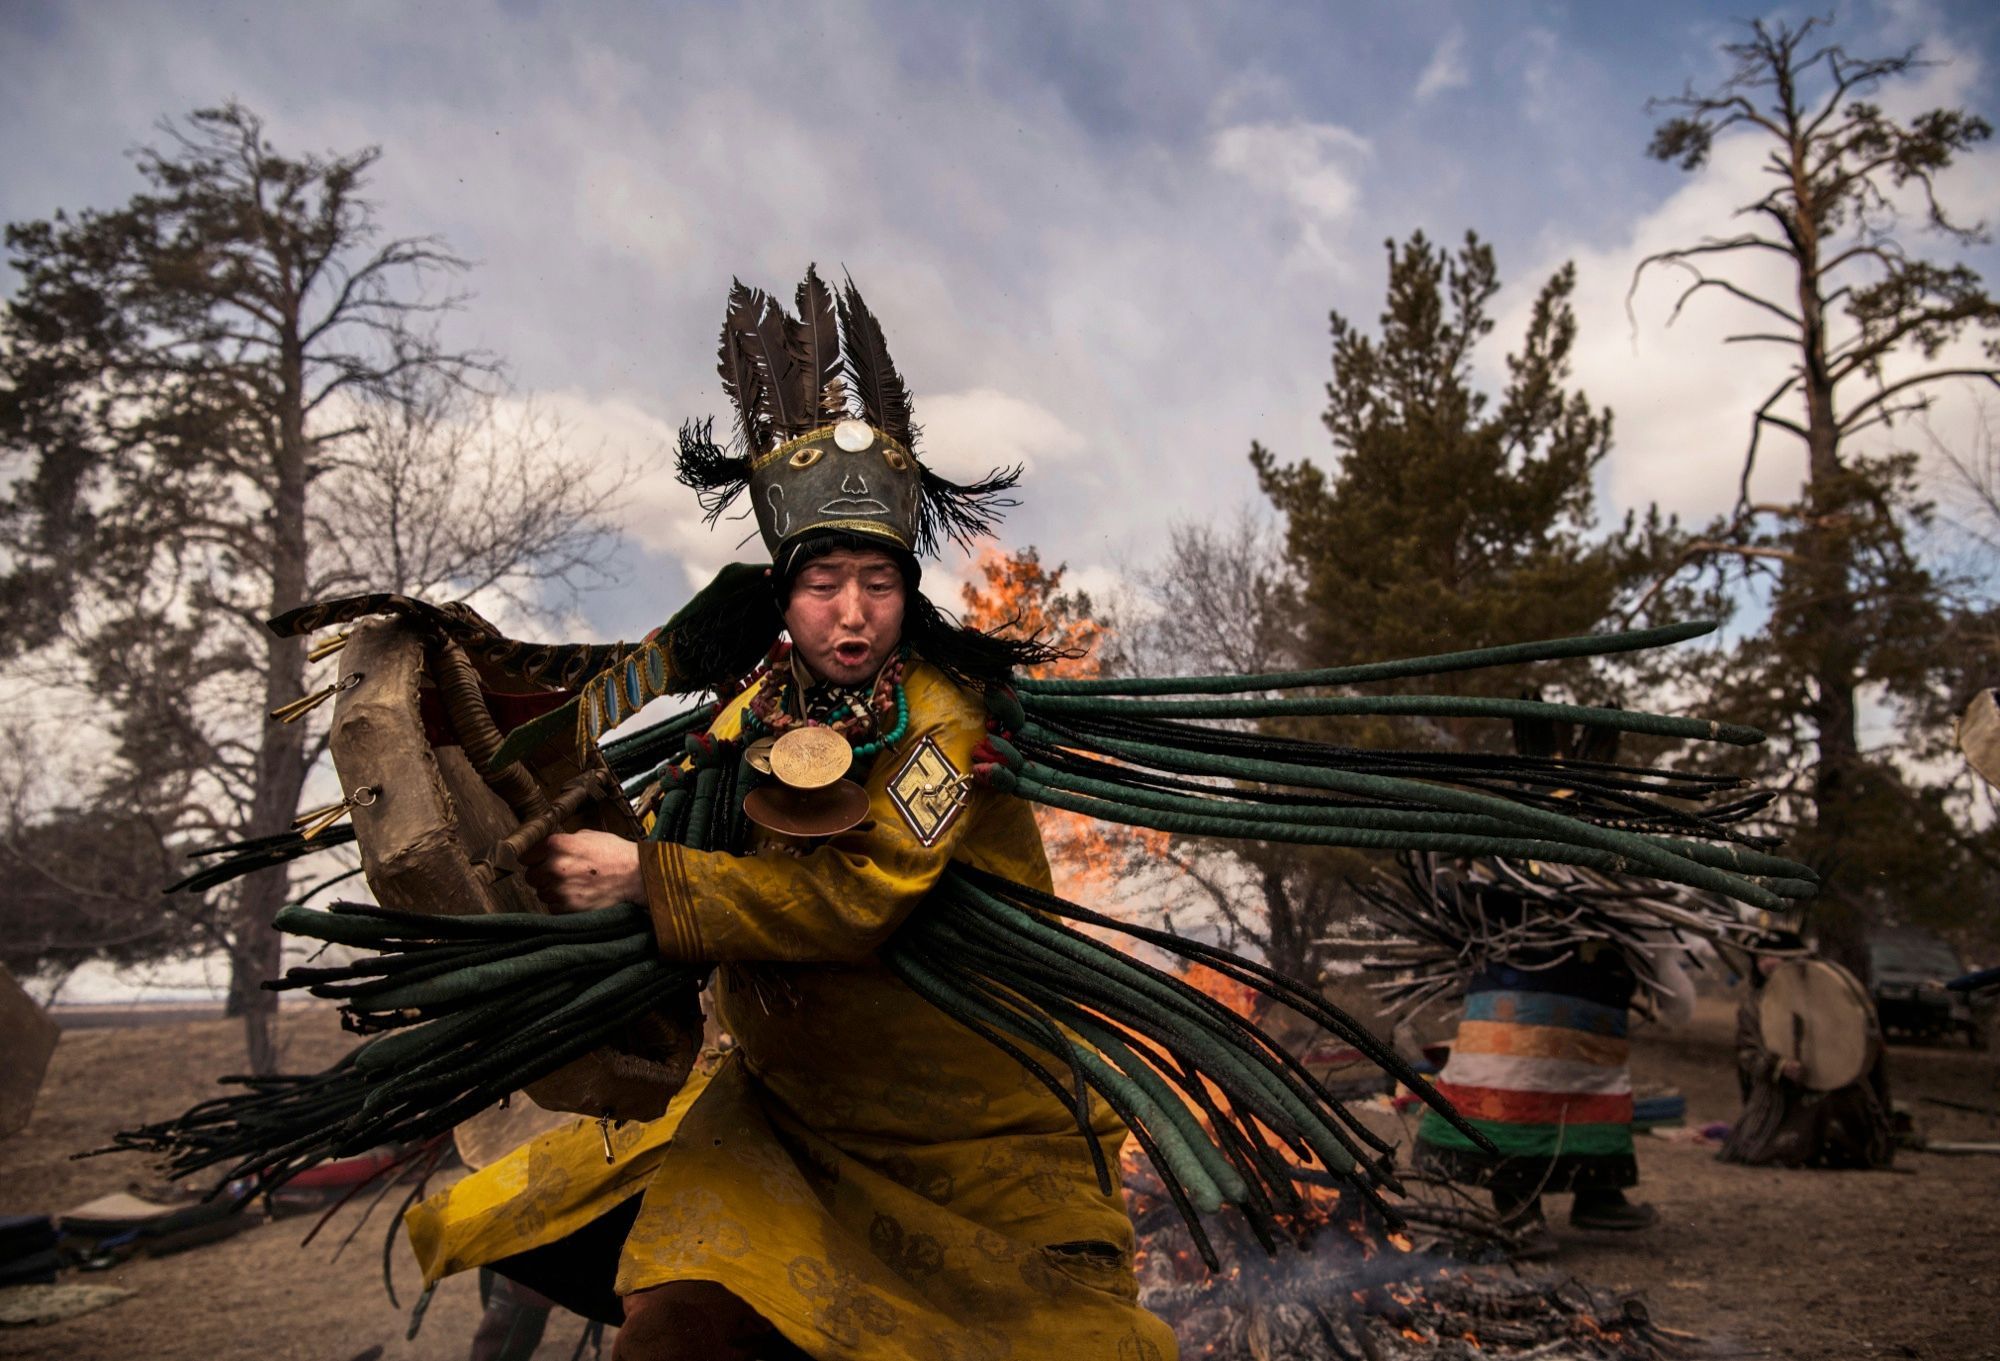 Rencontre avec les chamans en Mongolie - Arnaud Riou